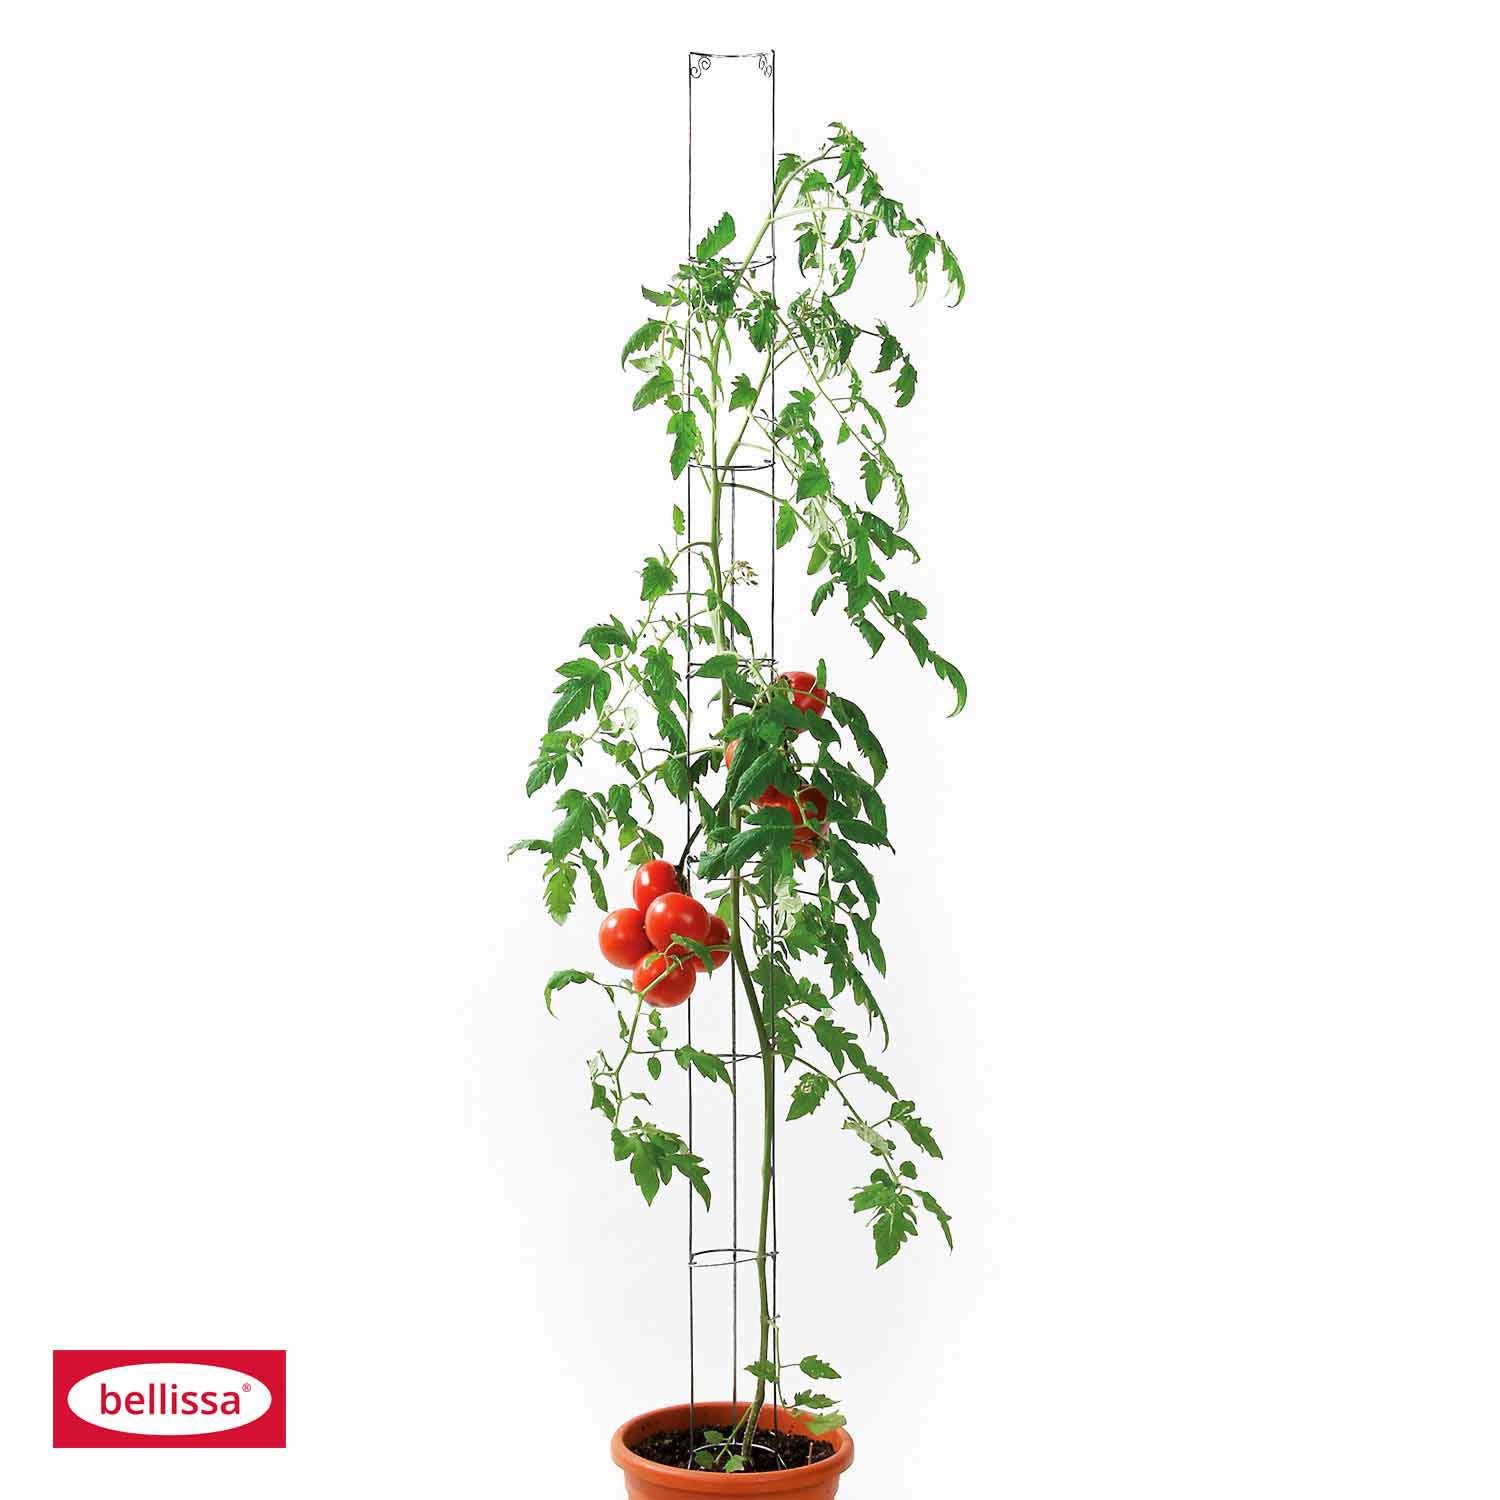 Bellissa Tomaten-/Gurkensäule, grün beschichtet H 160 cm Default Title